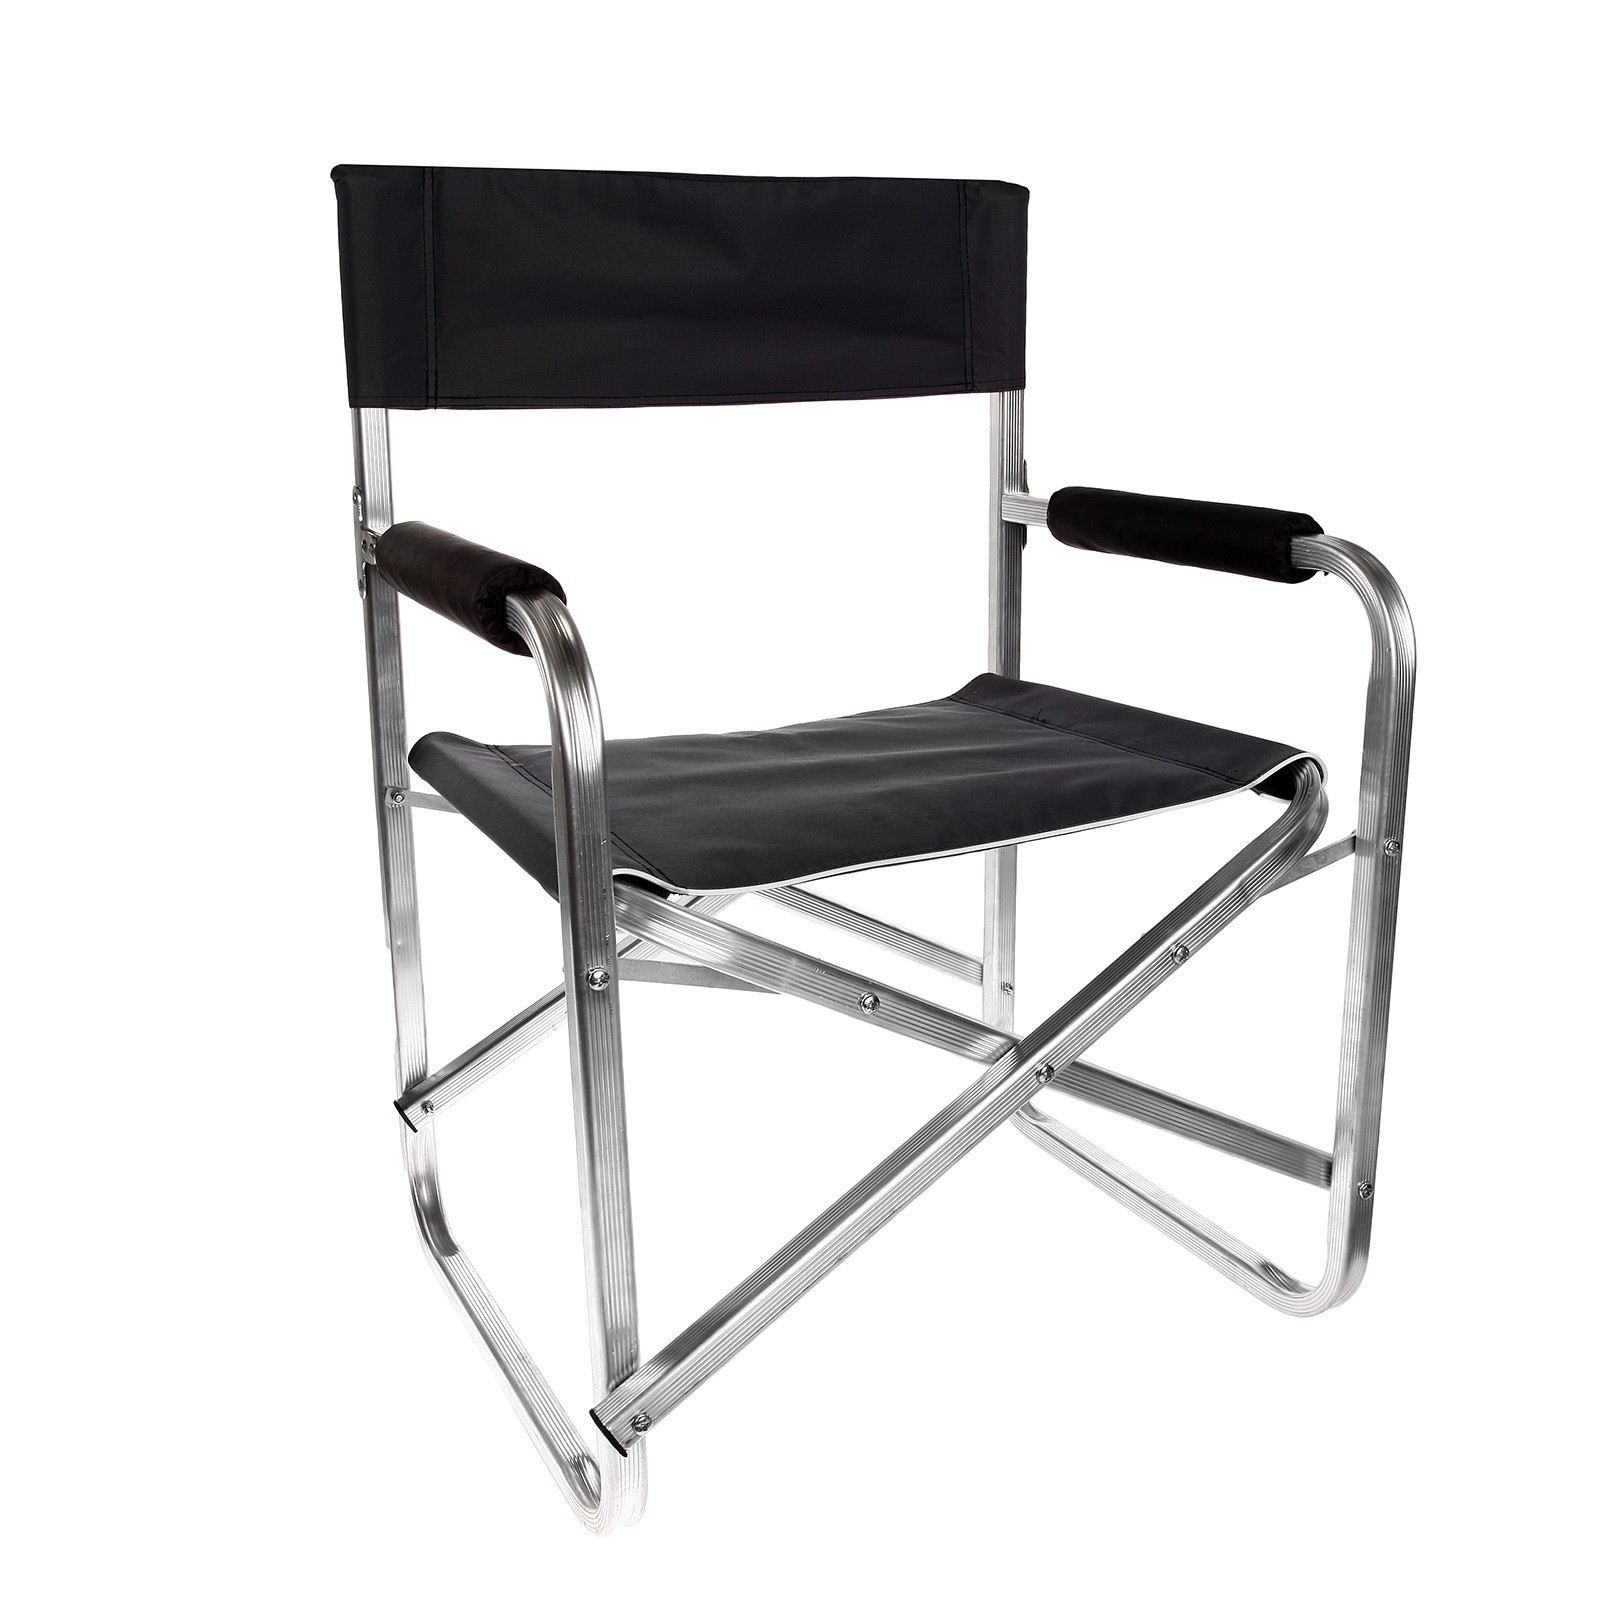 Стул складной алюминиевый. 700014 Кресло складное / a001. Кресло Indiana indi-033. Кресло складное Hy-8007. Кресло медведь d25 алюминиевое, складное.